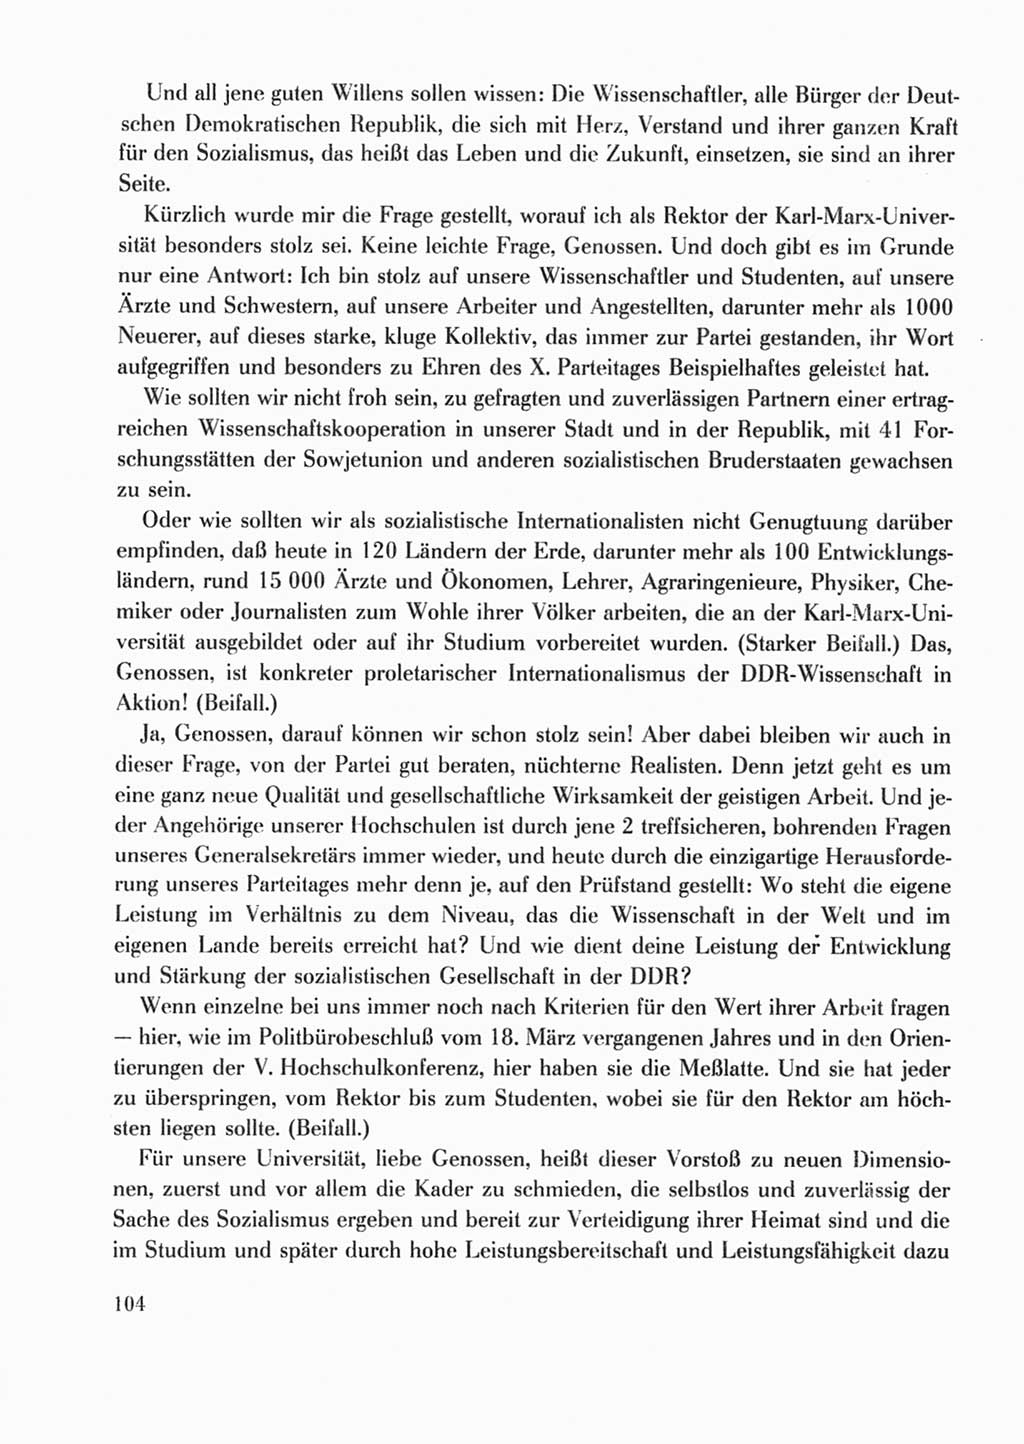 Protokoll der Verhandlungen des Ⅹ. Parteitages der Sozialistischen Einheitspartei Deutschlands (SED) [Deutsche Demokratische Republik (DDR)] 1981, Band 2, Seite 104 (Prot. Verh. Ⅹ. PT SED DDR 1981, Bd. 2, S. 104)